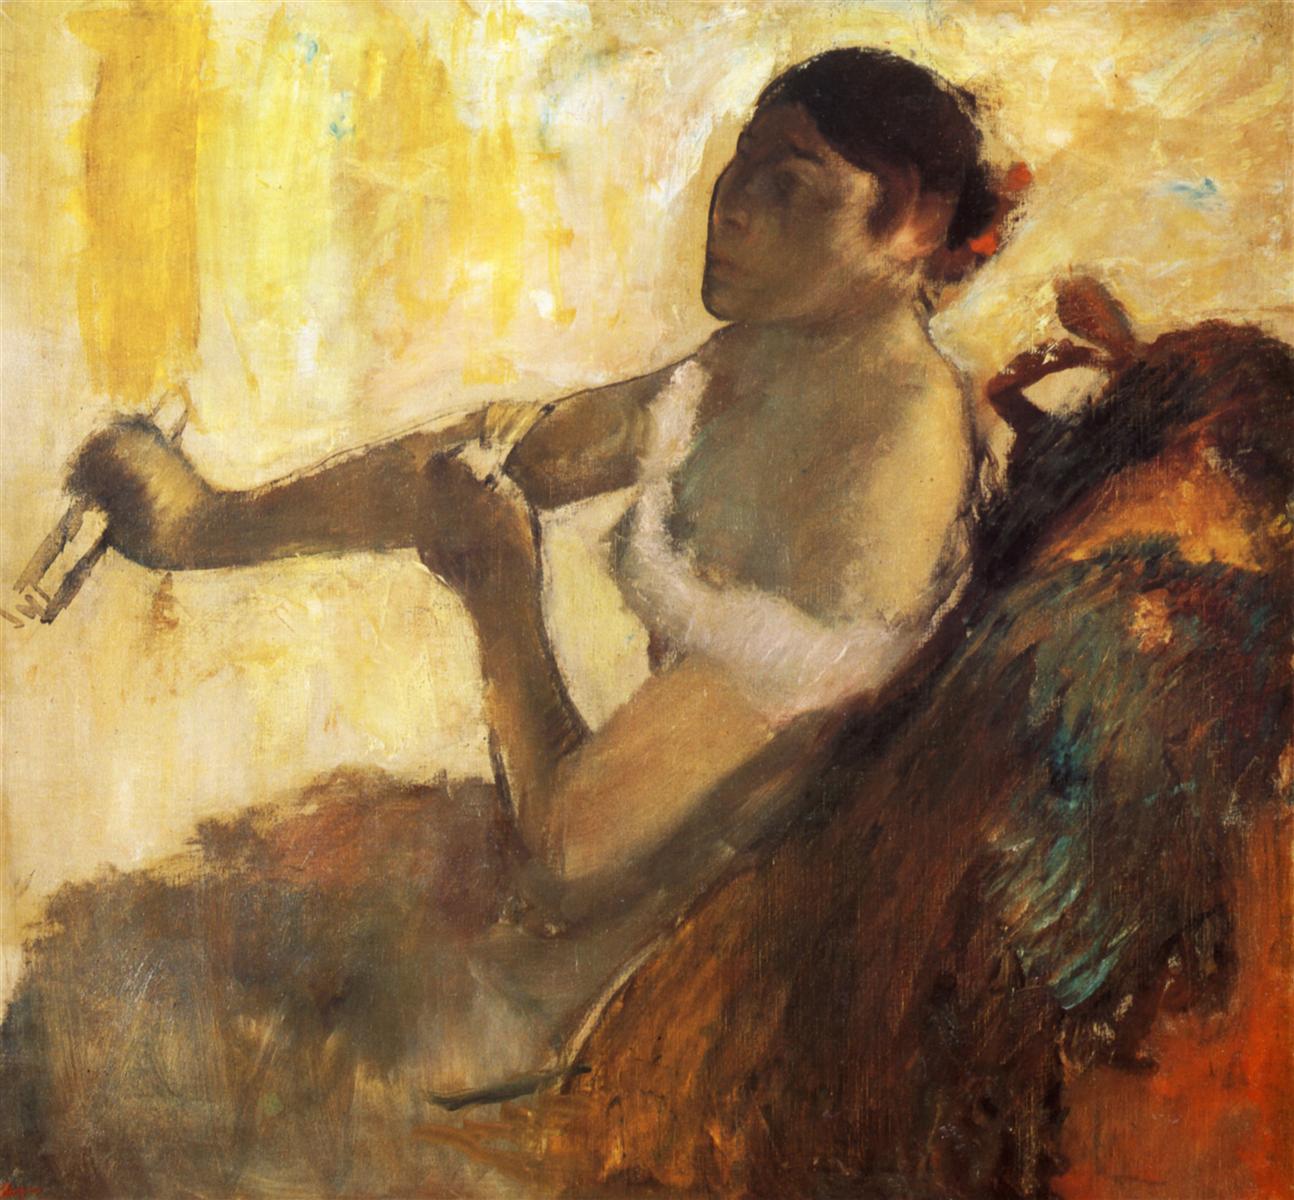 Edgar+Degas-1834-1917 (645).jpg